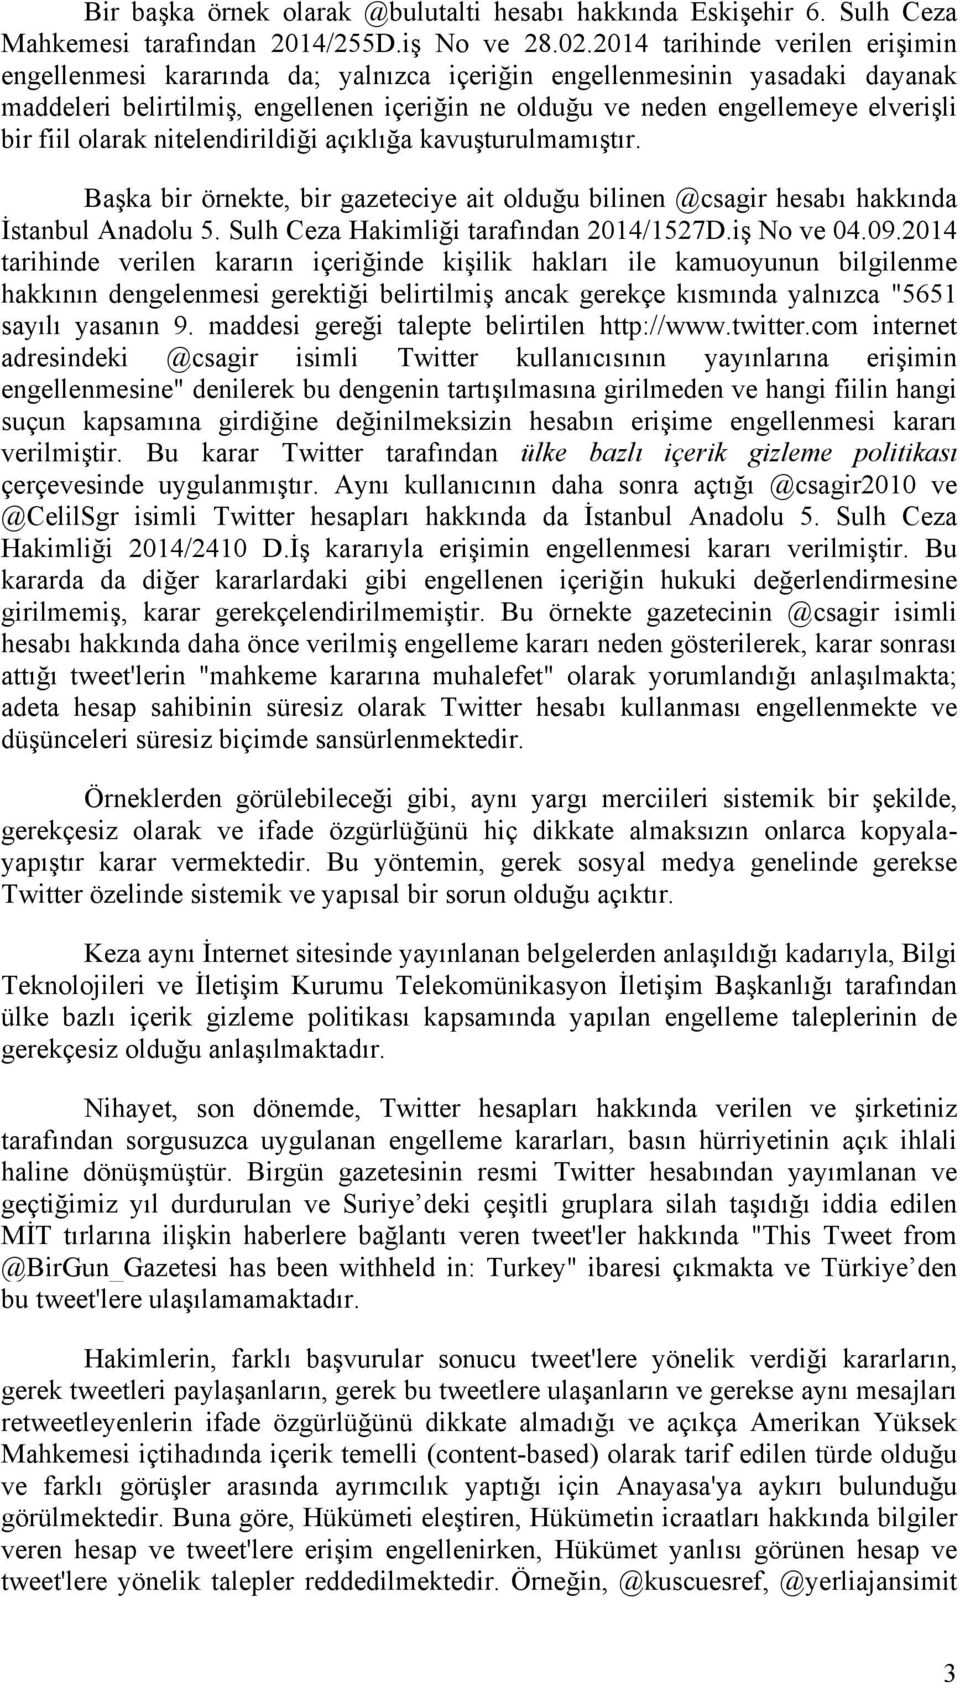 fiil olarak nitelendirildiği açıklığa kavuşturulmamıştır. Başka bir örnekte, bir gazeteciye ait olduğu bilinen @csagir hesabı hakkında İstanbul Anadolu 5. Sulh Ceza Hakimliği tarafından 2014/1527D.